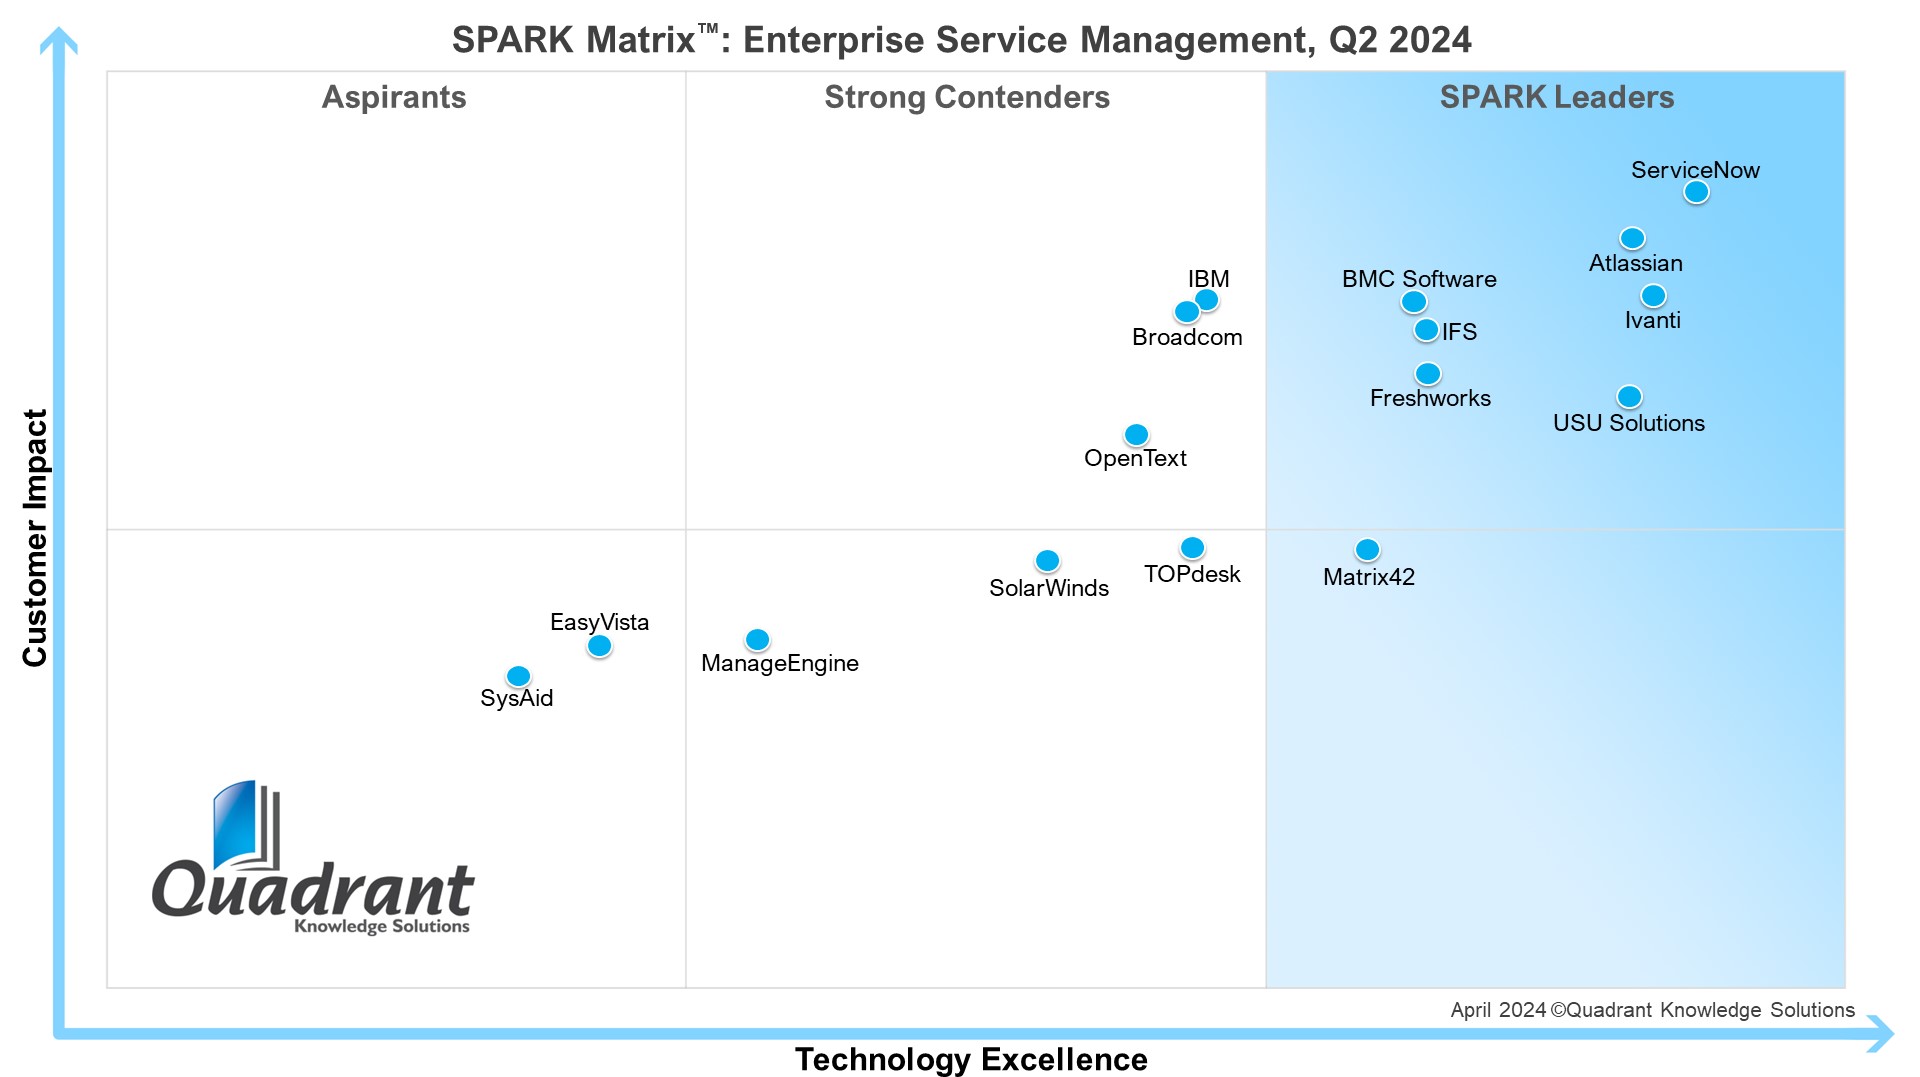 SPARK Matrix: Enterprise Service Management Quadrant Knowledge Solutions 2024